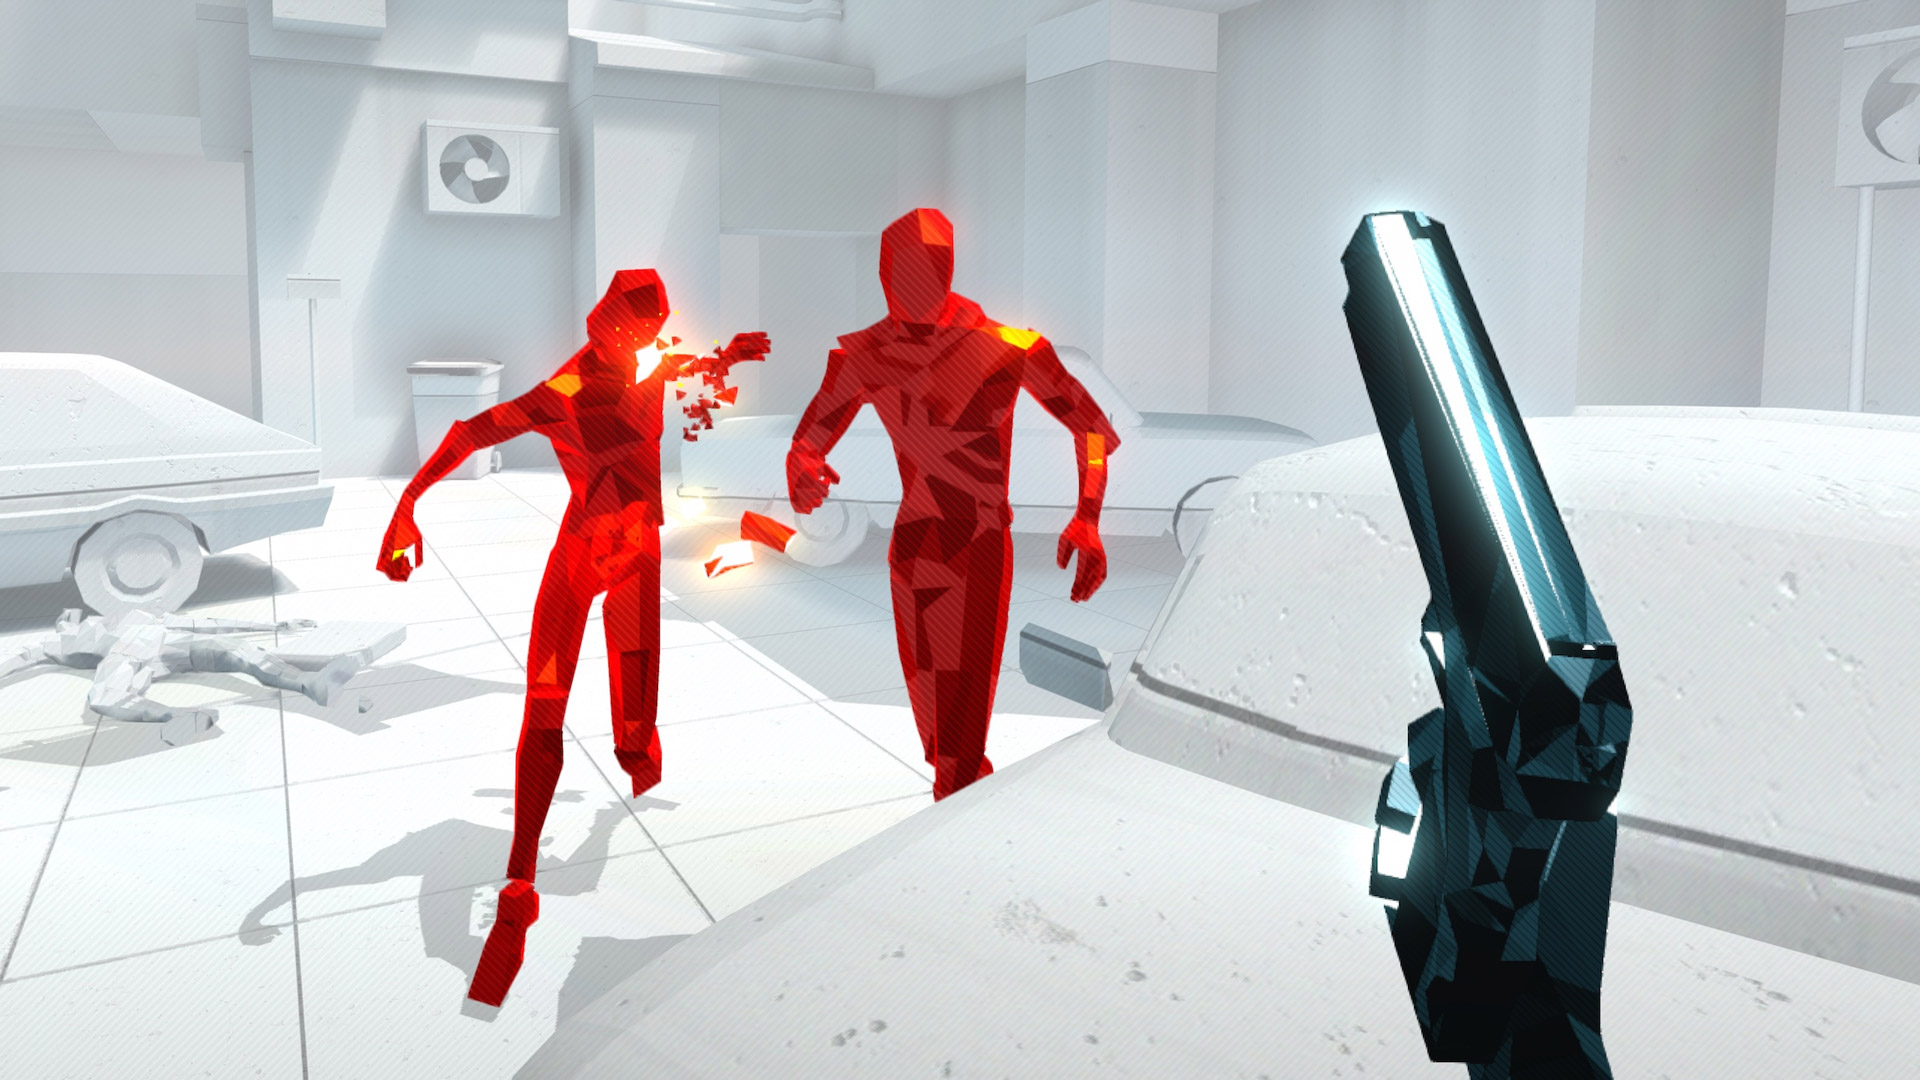 Сложнейшая игра стала реальностью. Superhot VR ps4. Супер хот 2 ВР. Игра VR super hot. Игра с красным человечком.